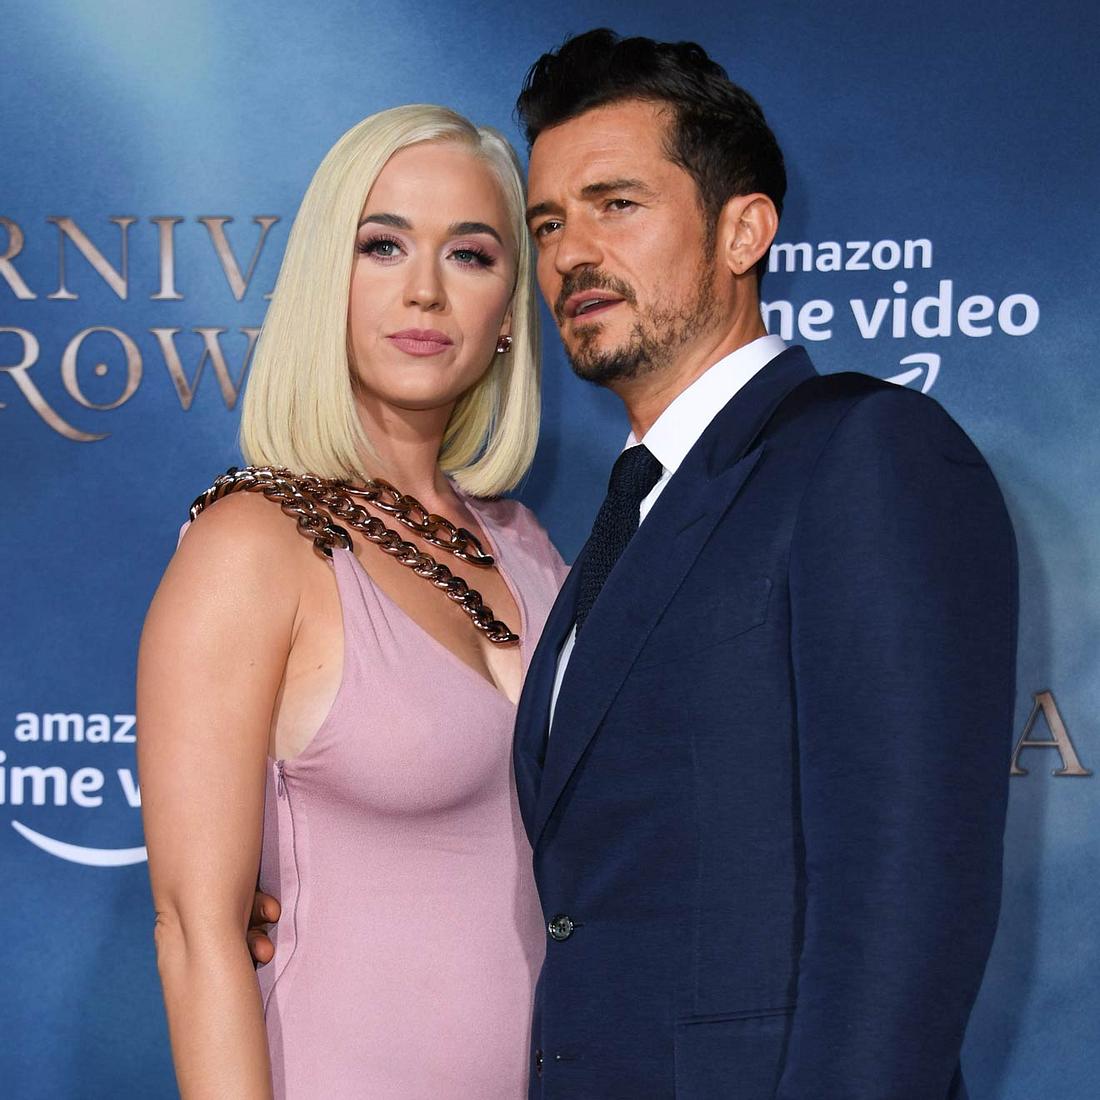 Aus Sorge um ihr ungeborenes Baby, legen Katy Perry und Orlando Bloom ihre Hochzeitspläne auf Eis.